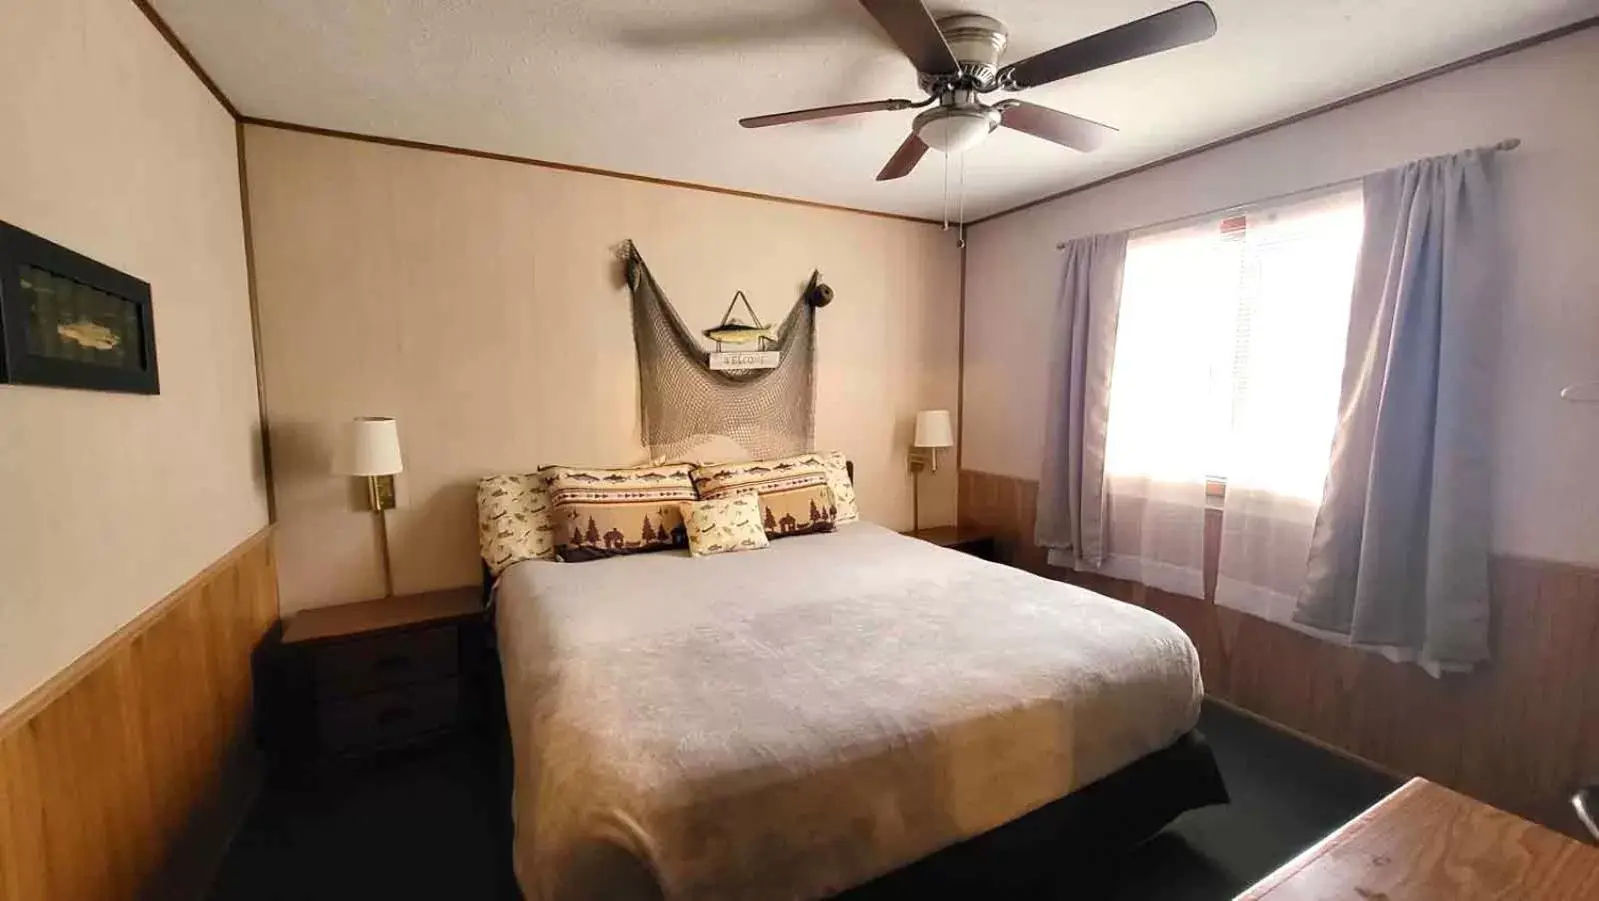 Bedroom, Bed in Hunter's Friend Resort Near Table Rock Lake